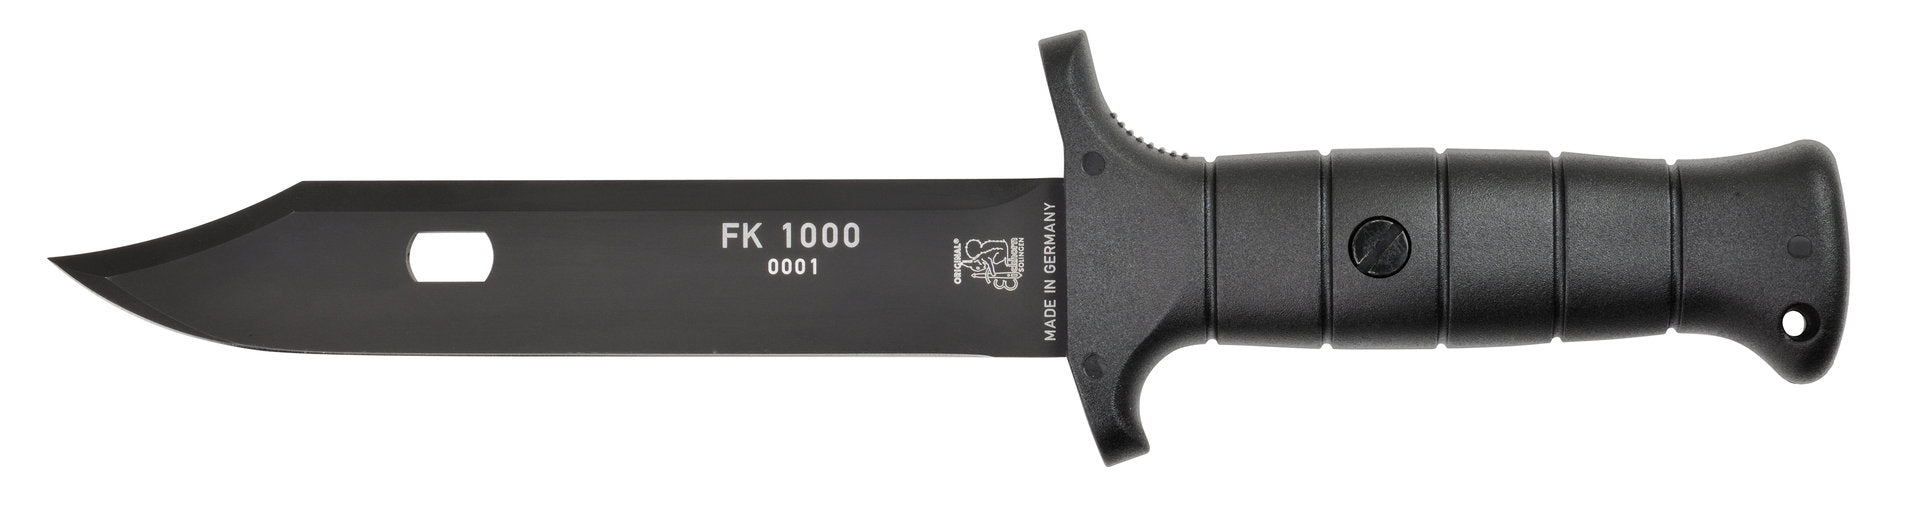 Cuchillo de campo FK 1000